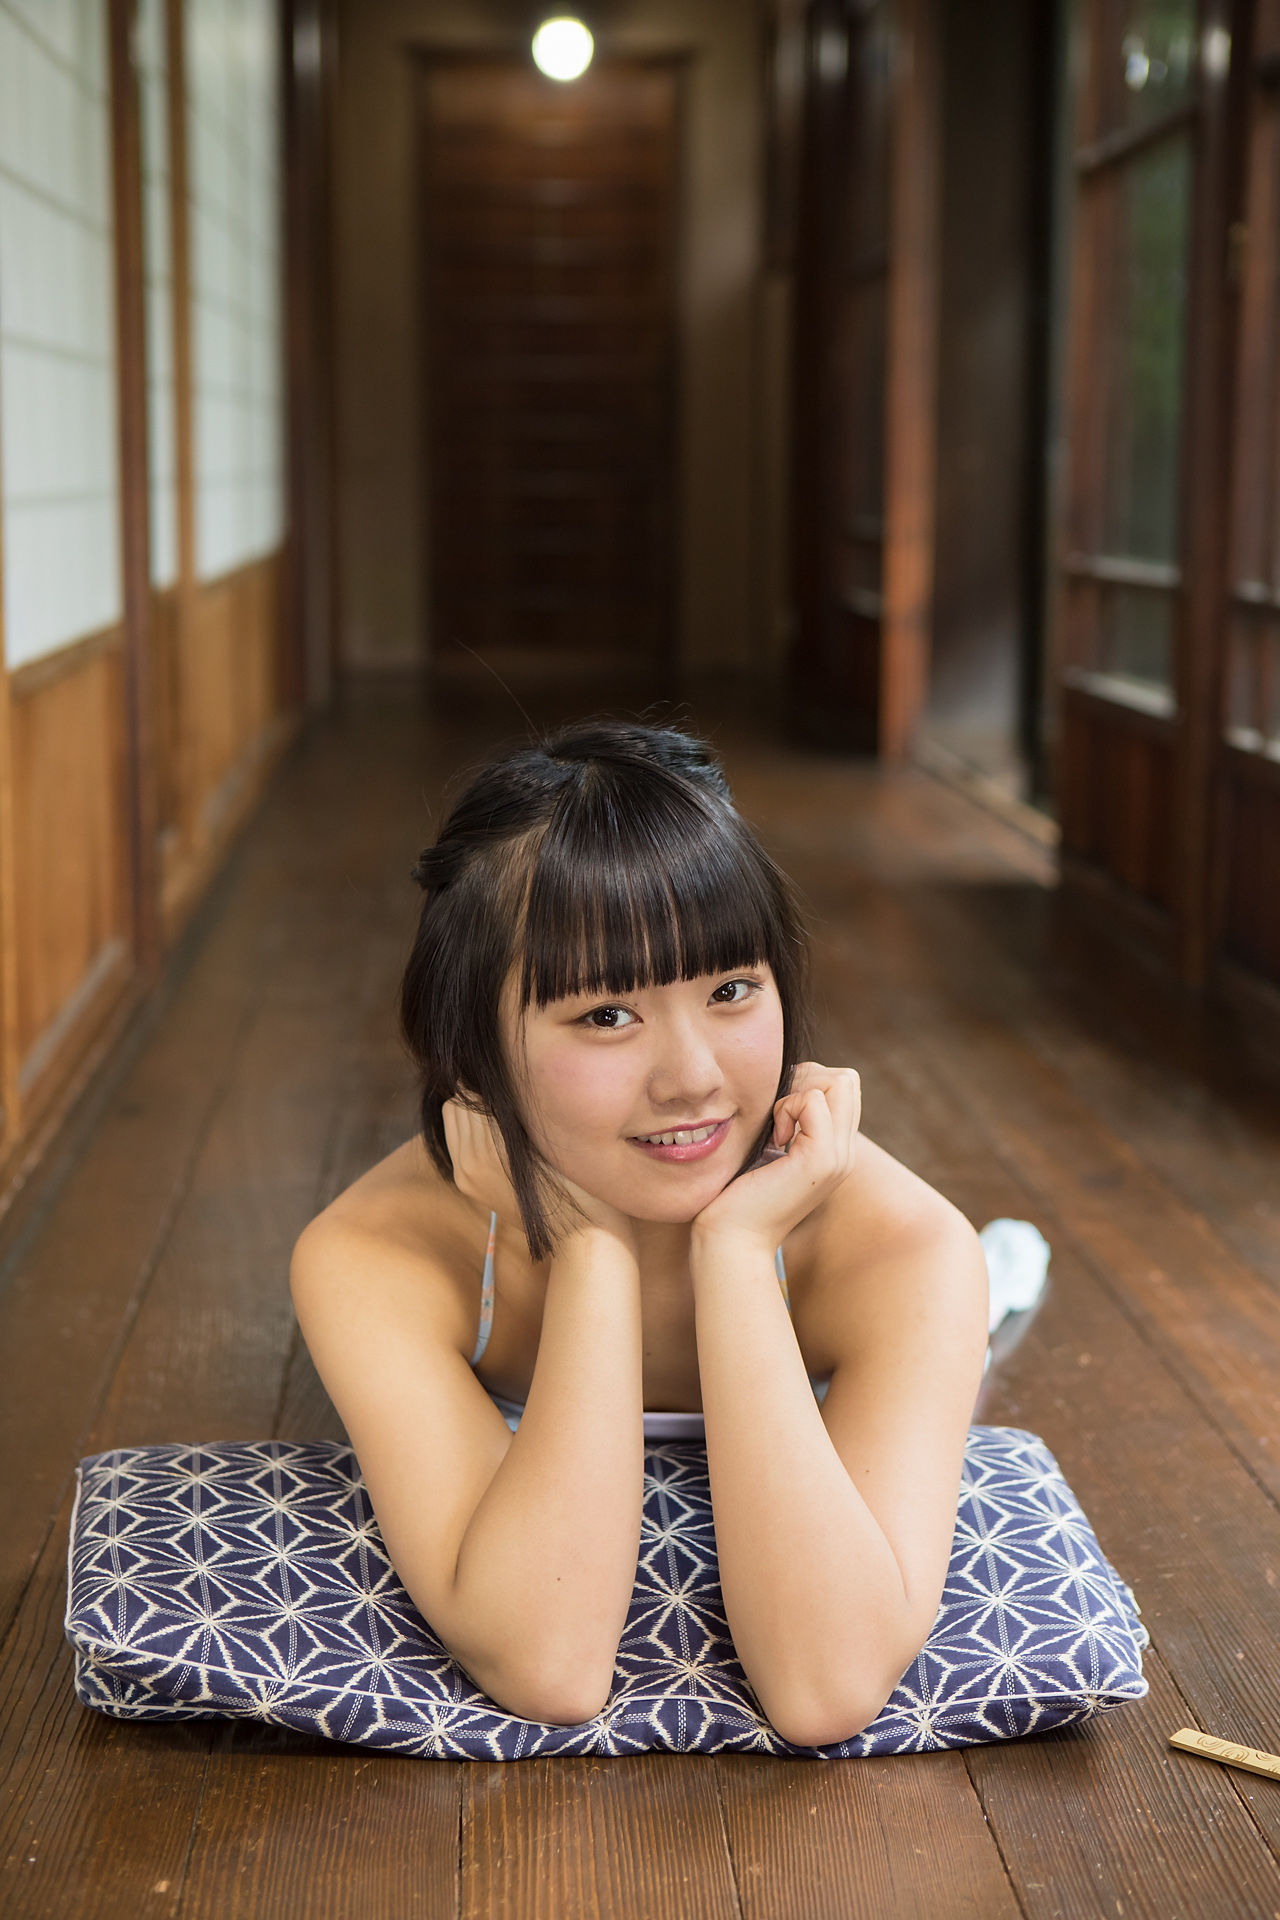 [Minisuka.tv]清纯日本少女连衣裙:香月杏珠(香月りお)高品质壁纸图片珍藏版(50P)